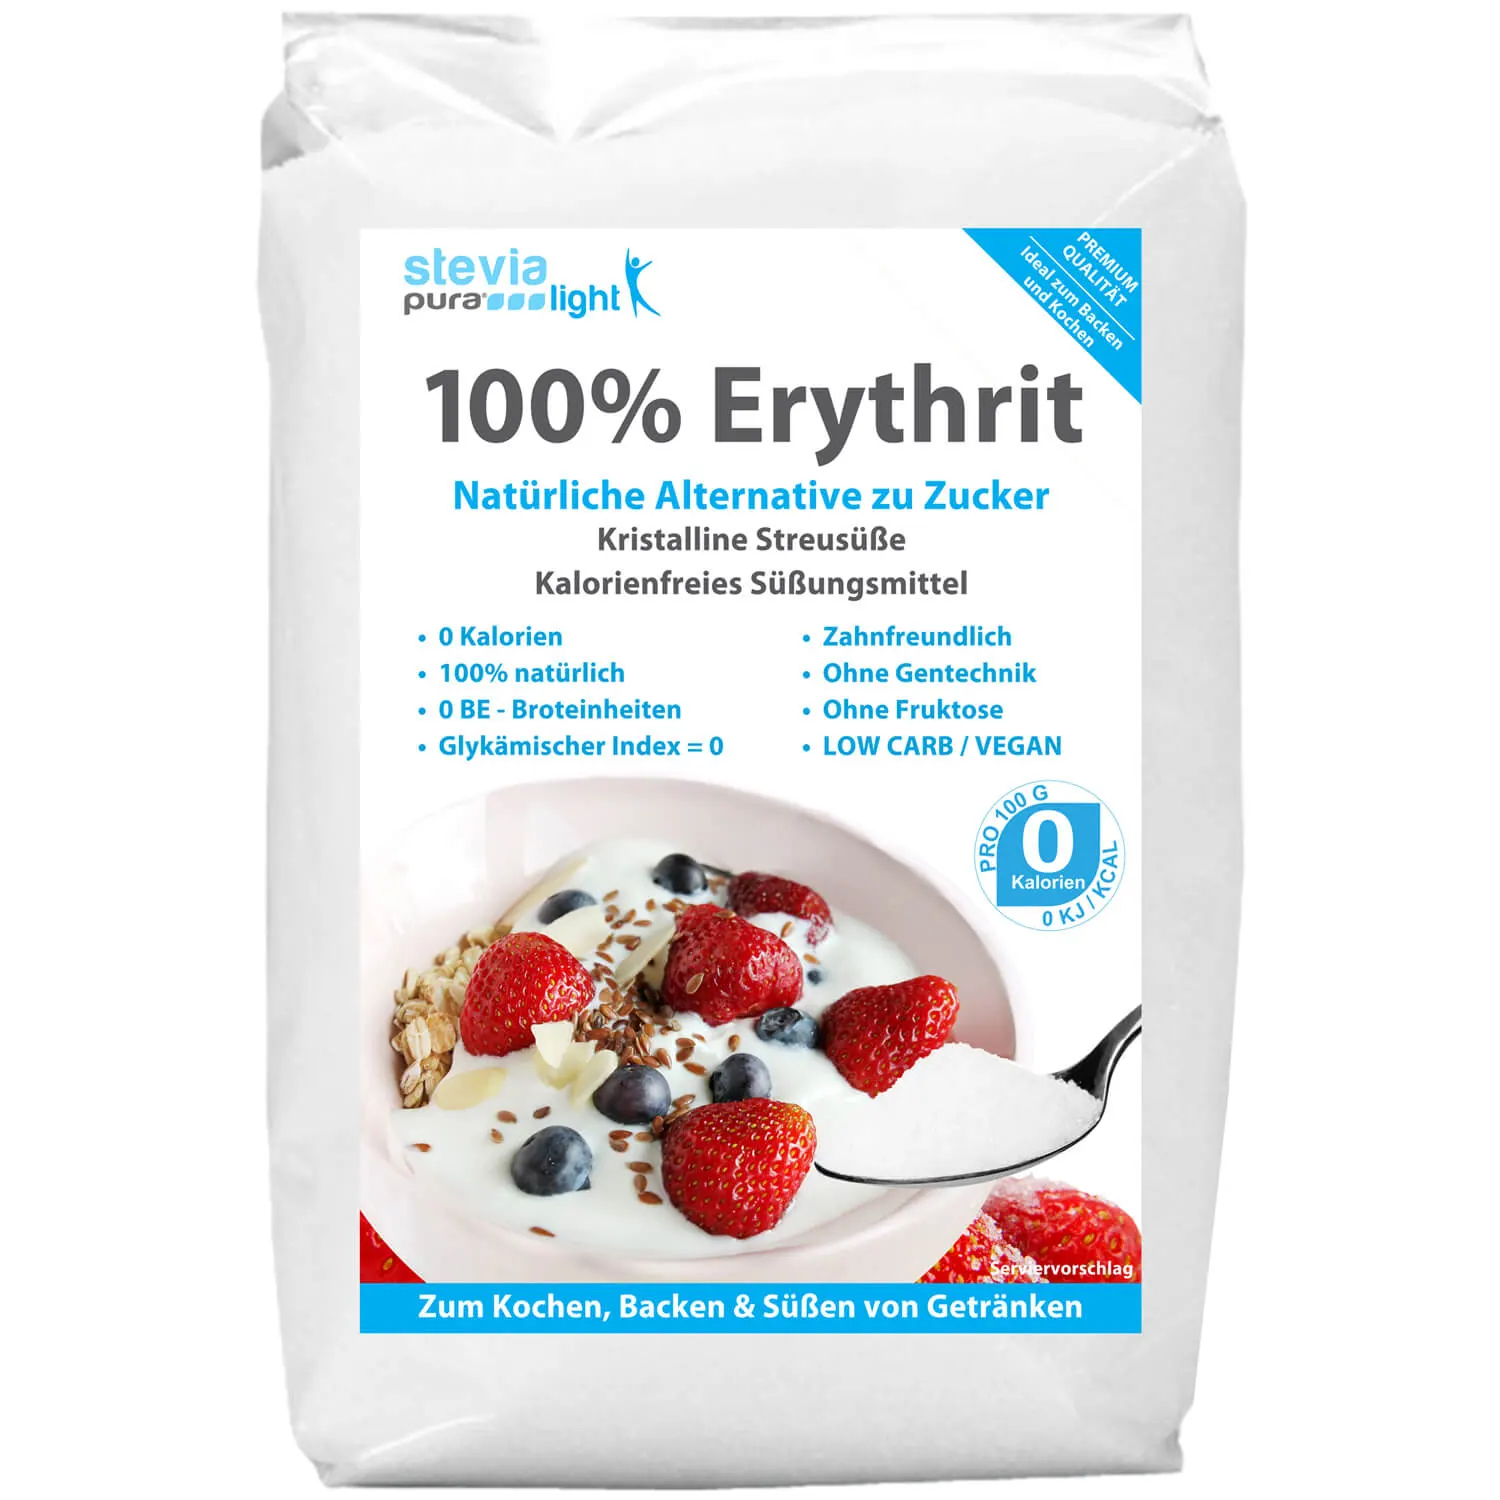 Koop Erythritol: De suikervervanger wordt ook wel Erythritol genoemd.